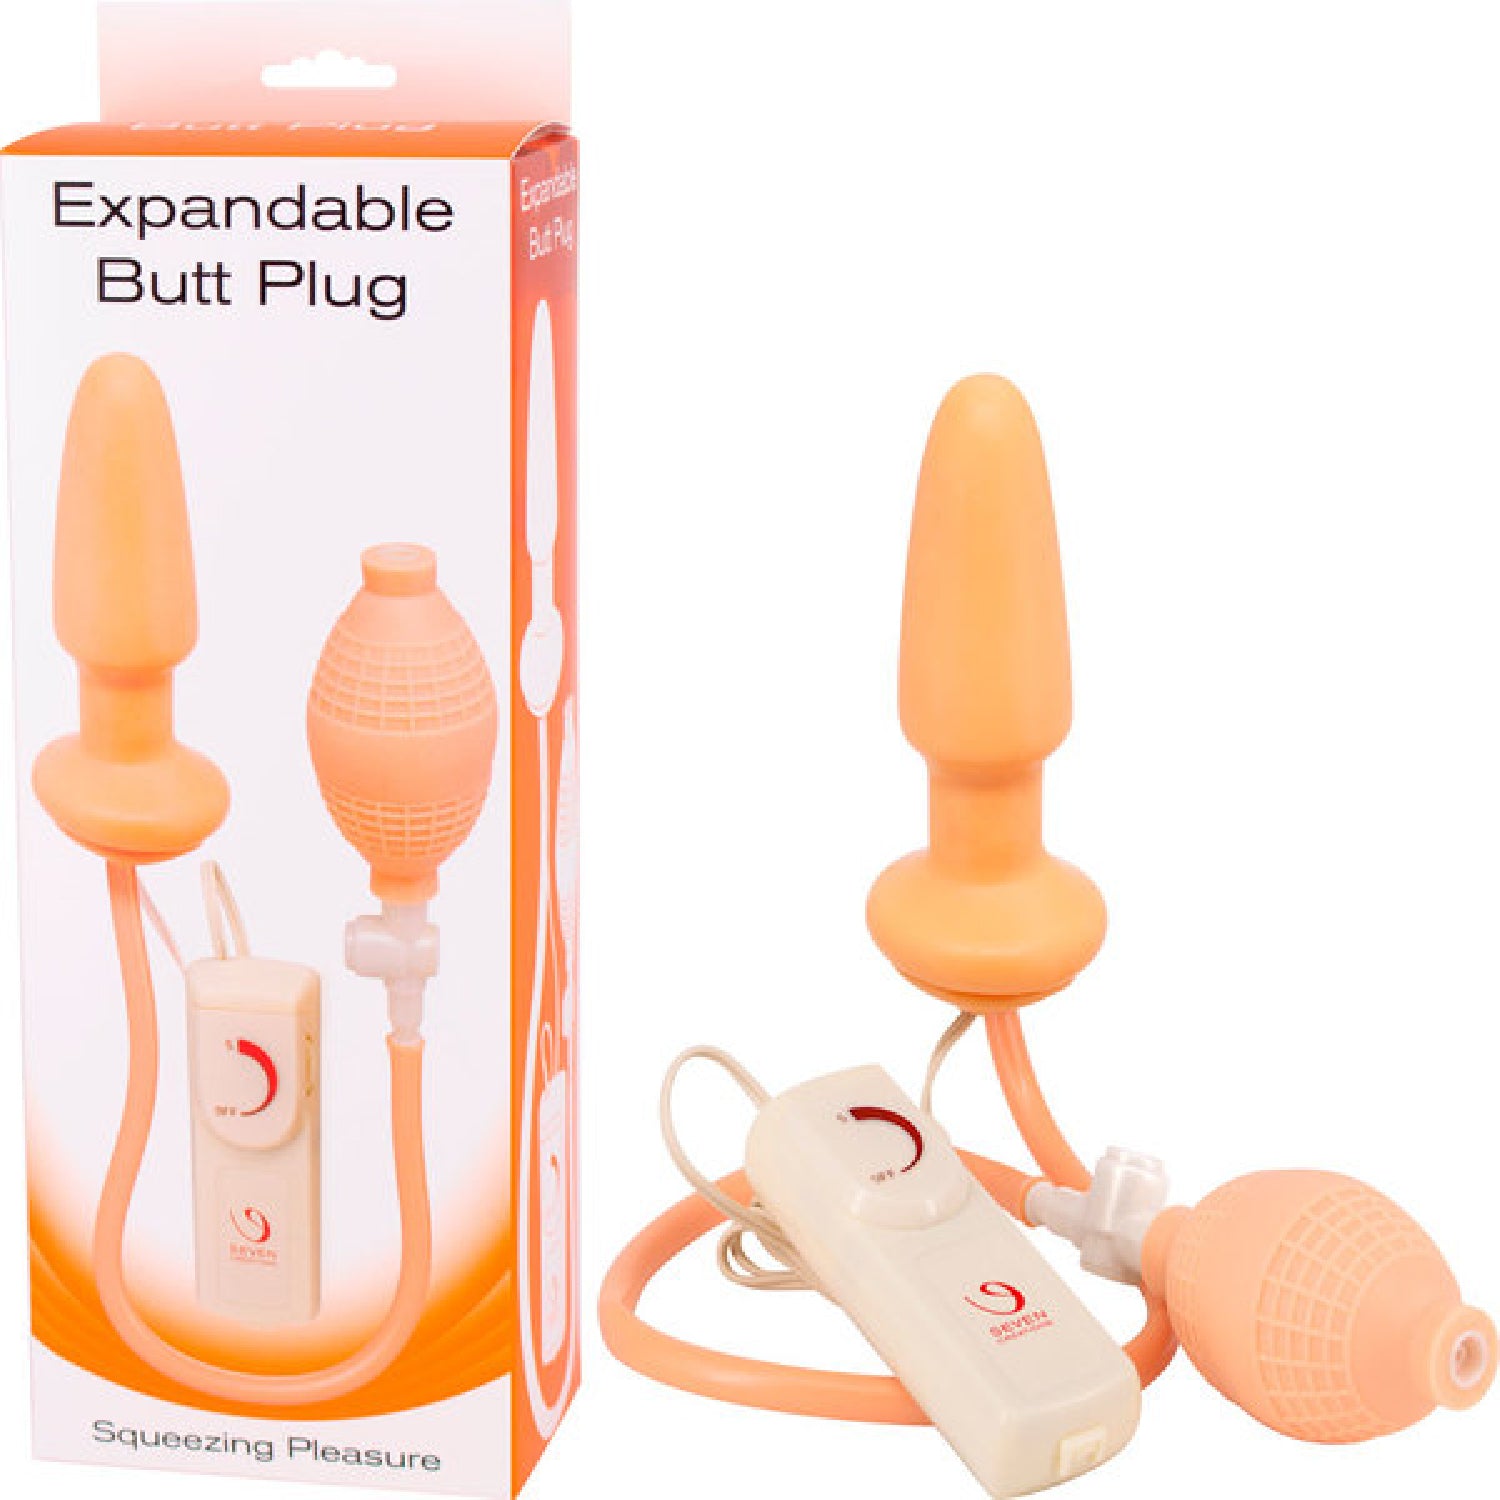 Expandable Butt Plug Flesh - One Stop Adult Shop